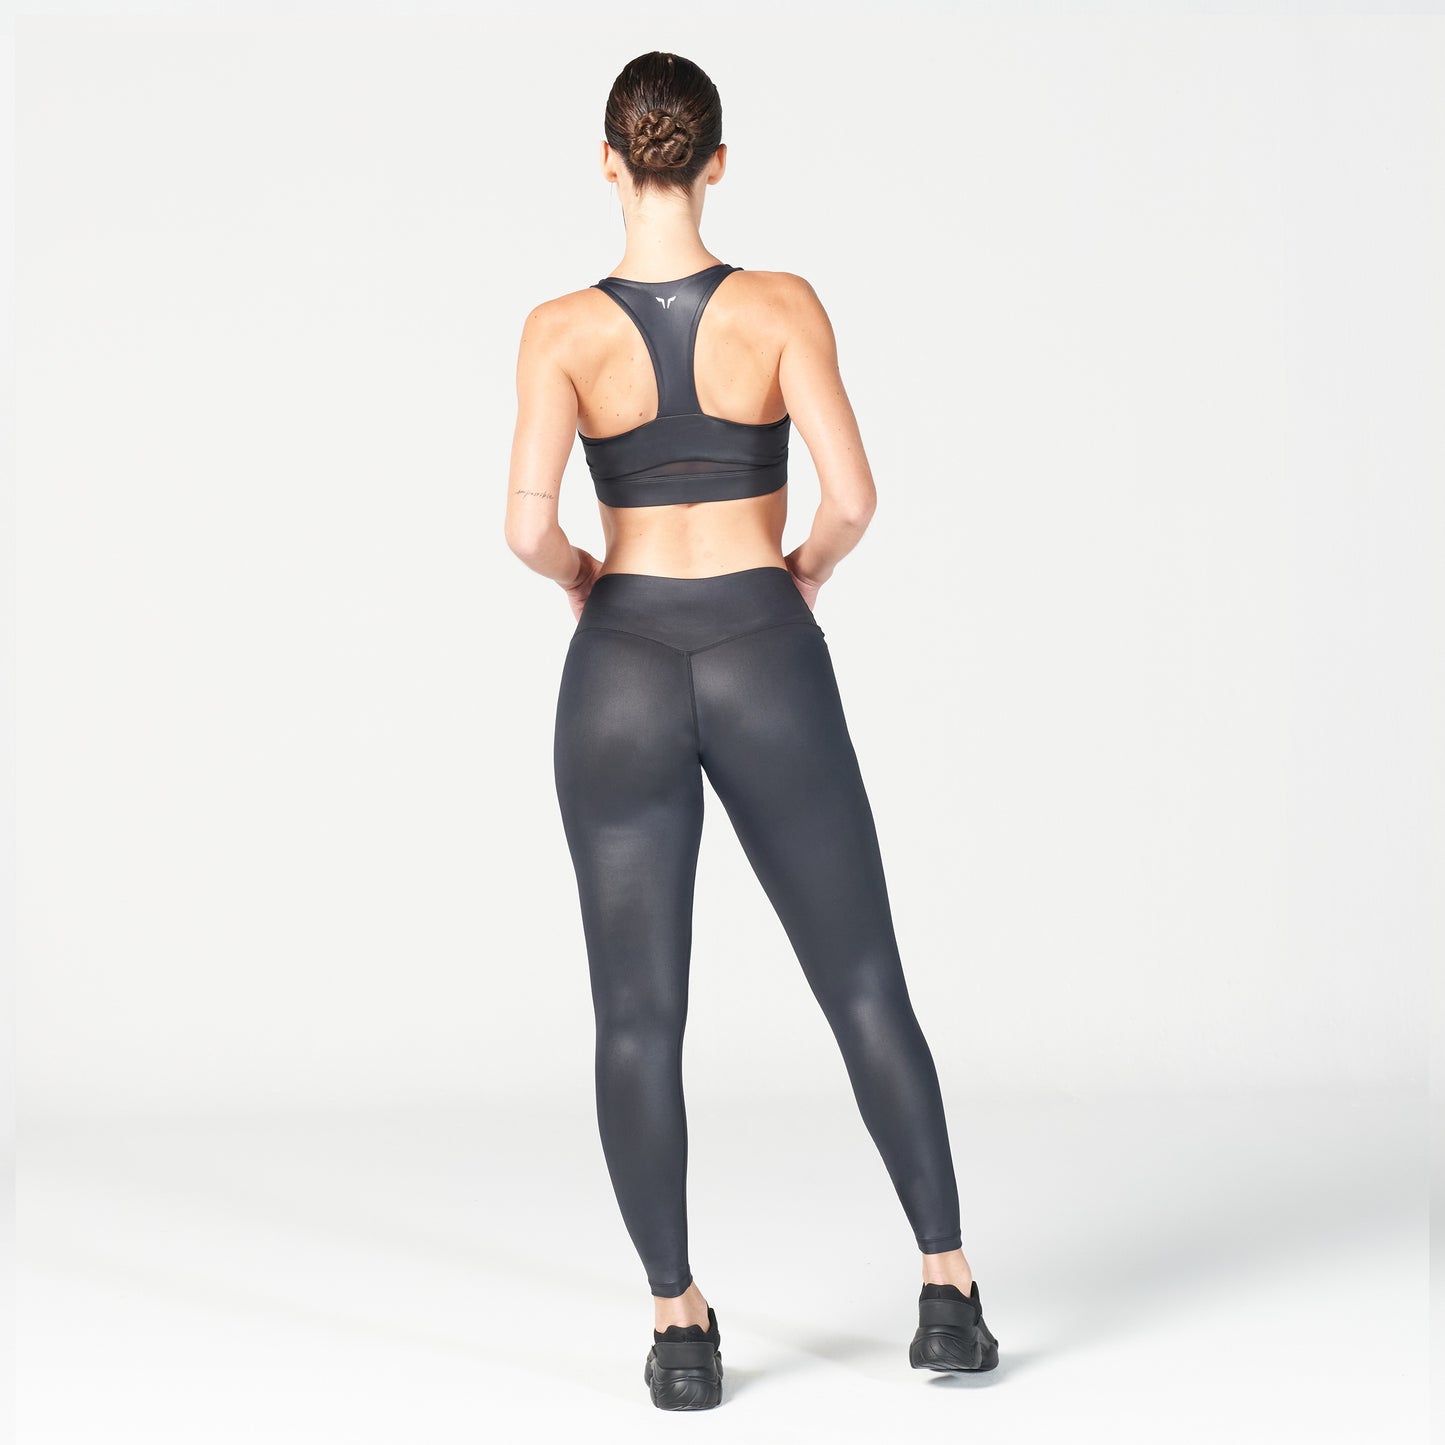 squatwolf-workout-clothes-glaze-sports-bra-black-sports-bra-for-gym